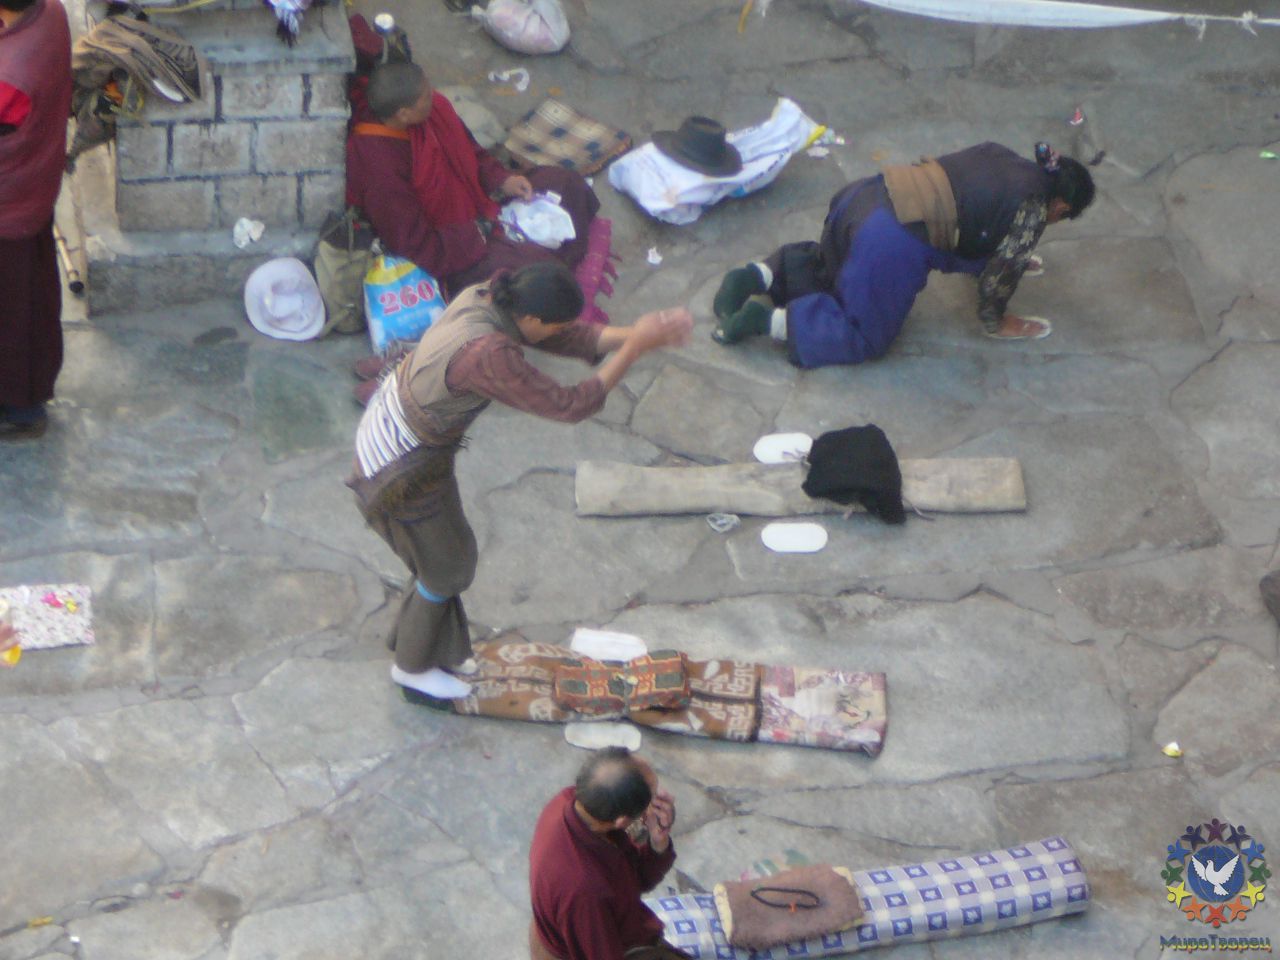 Простирание тибетцев. - Тибет 2006. Фотовоспоминание 5 лет спустя.